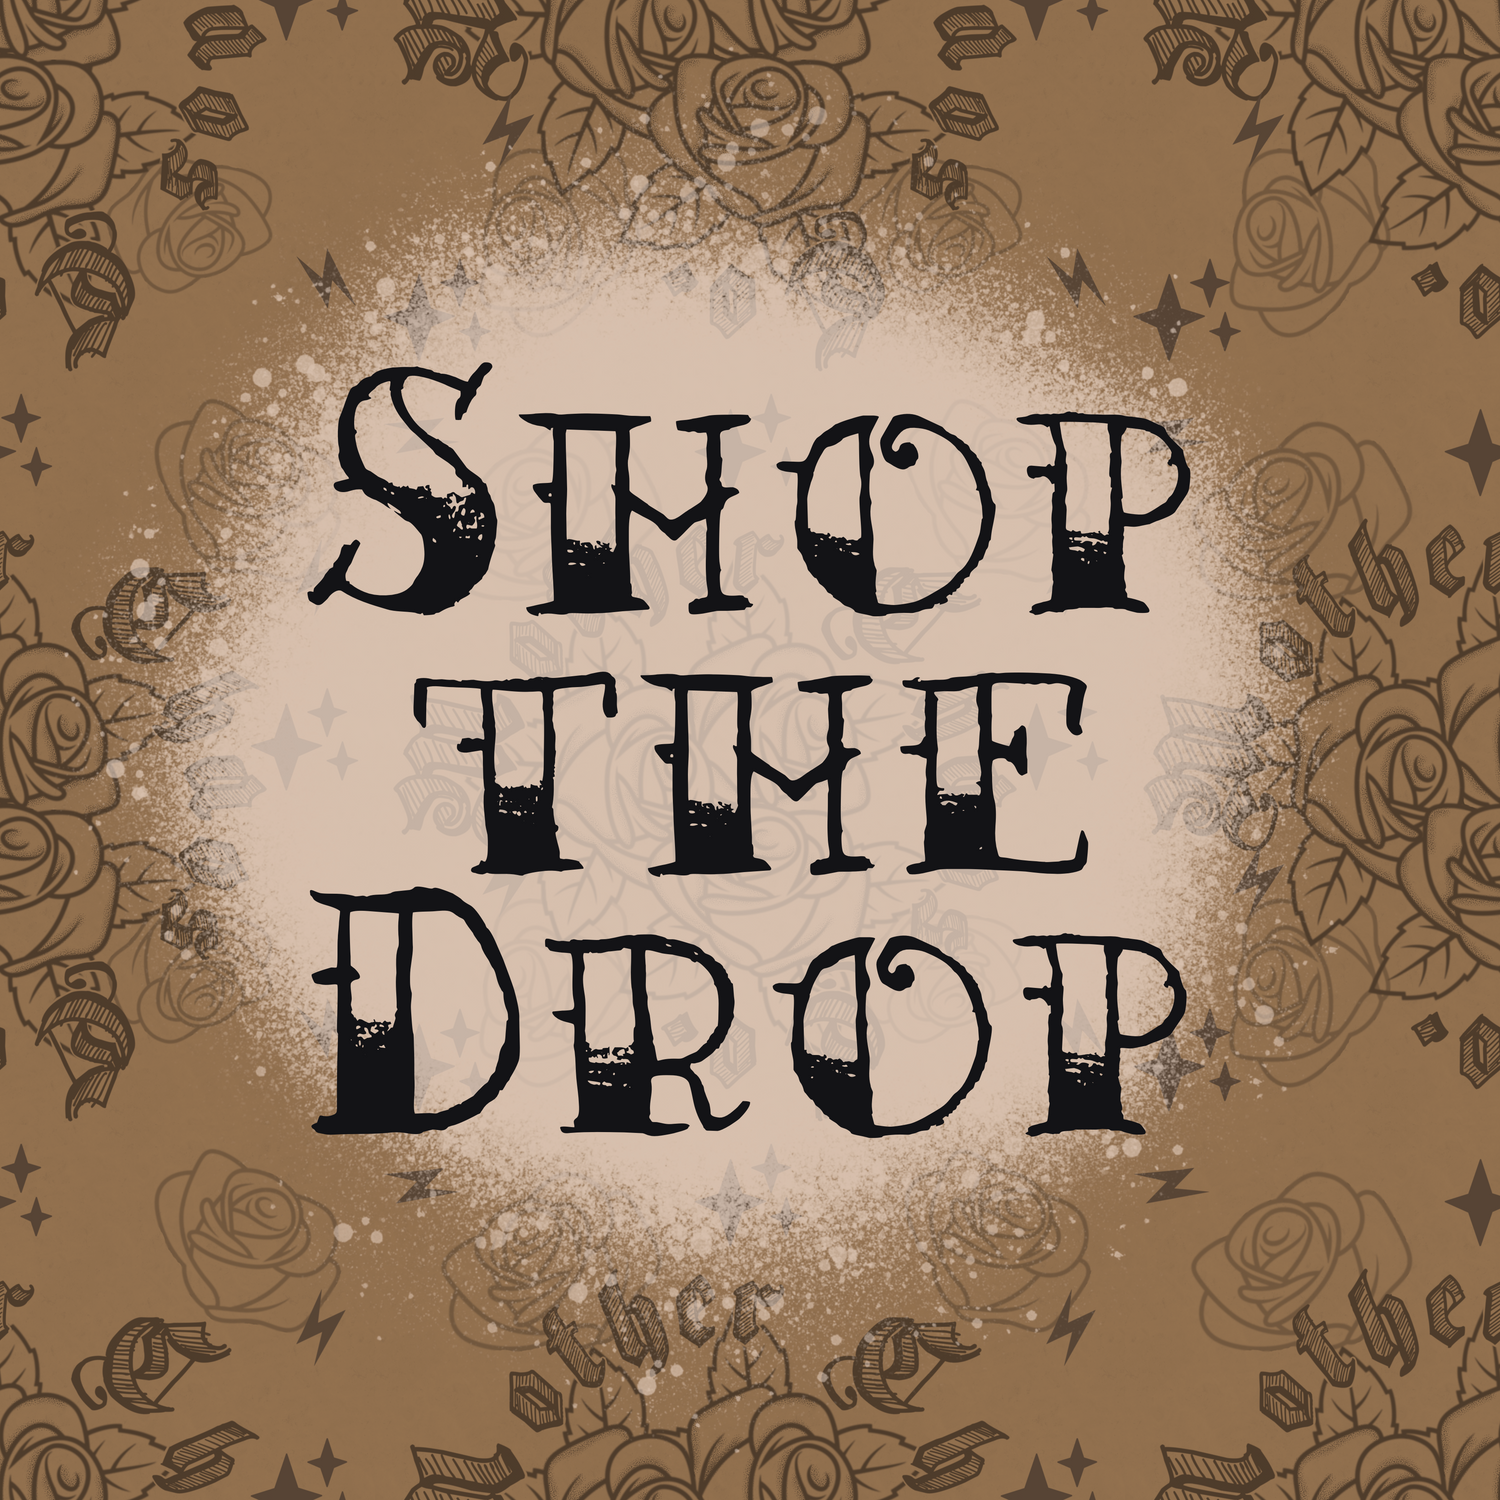 SHOP THE DROP